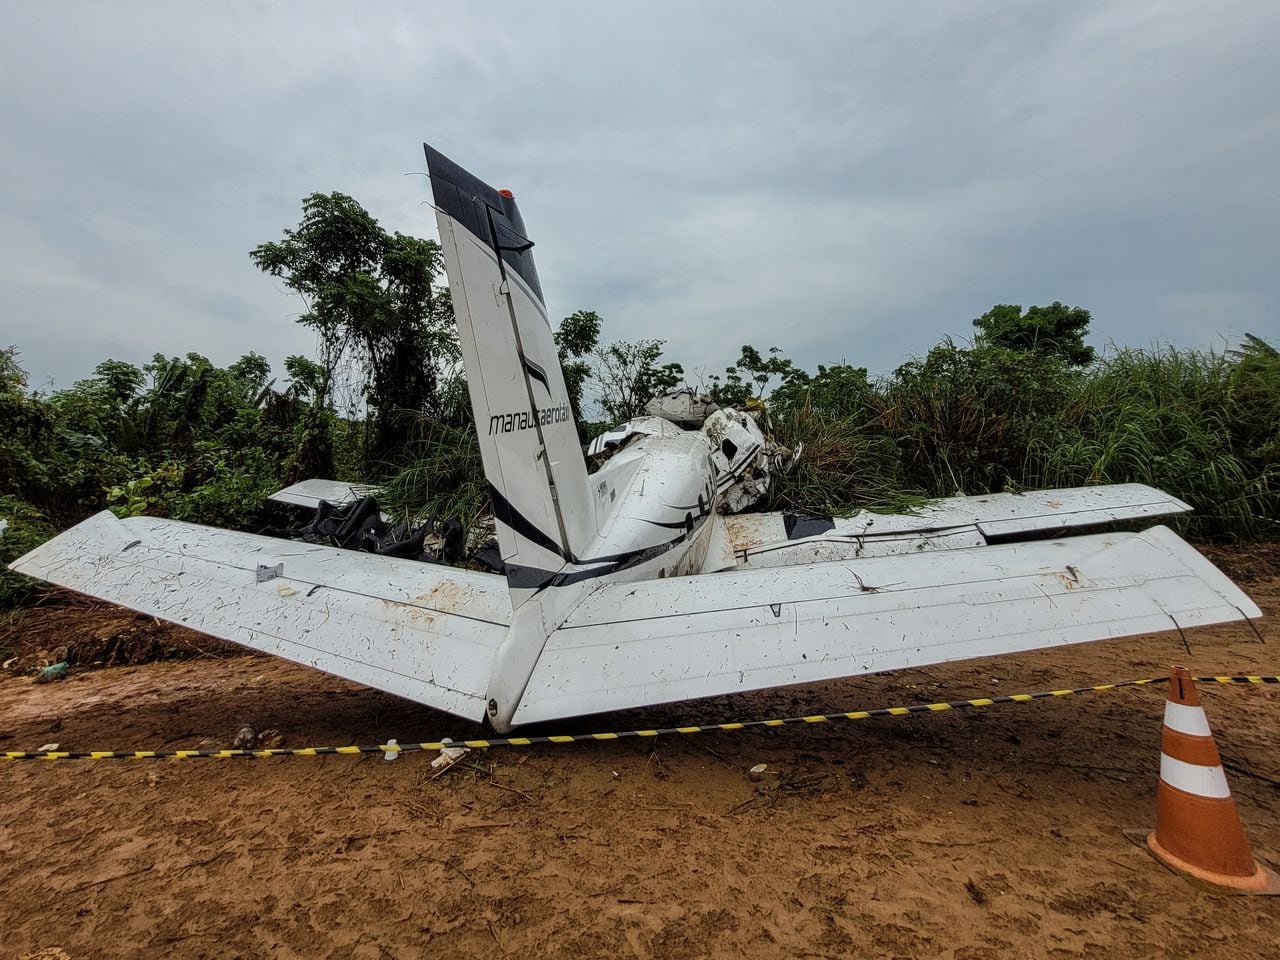 Catorce personas murieron el sábado cuando un avión se estrelló en la Amazonia brasileña mientras intentaba aterrizar en medio de una tormenta en la ciudad turística de Barcelos, sin dejar supervivientes, dijeron las autoridades.